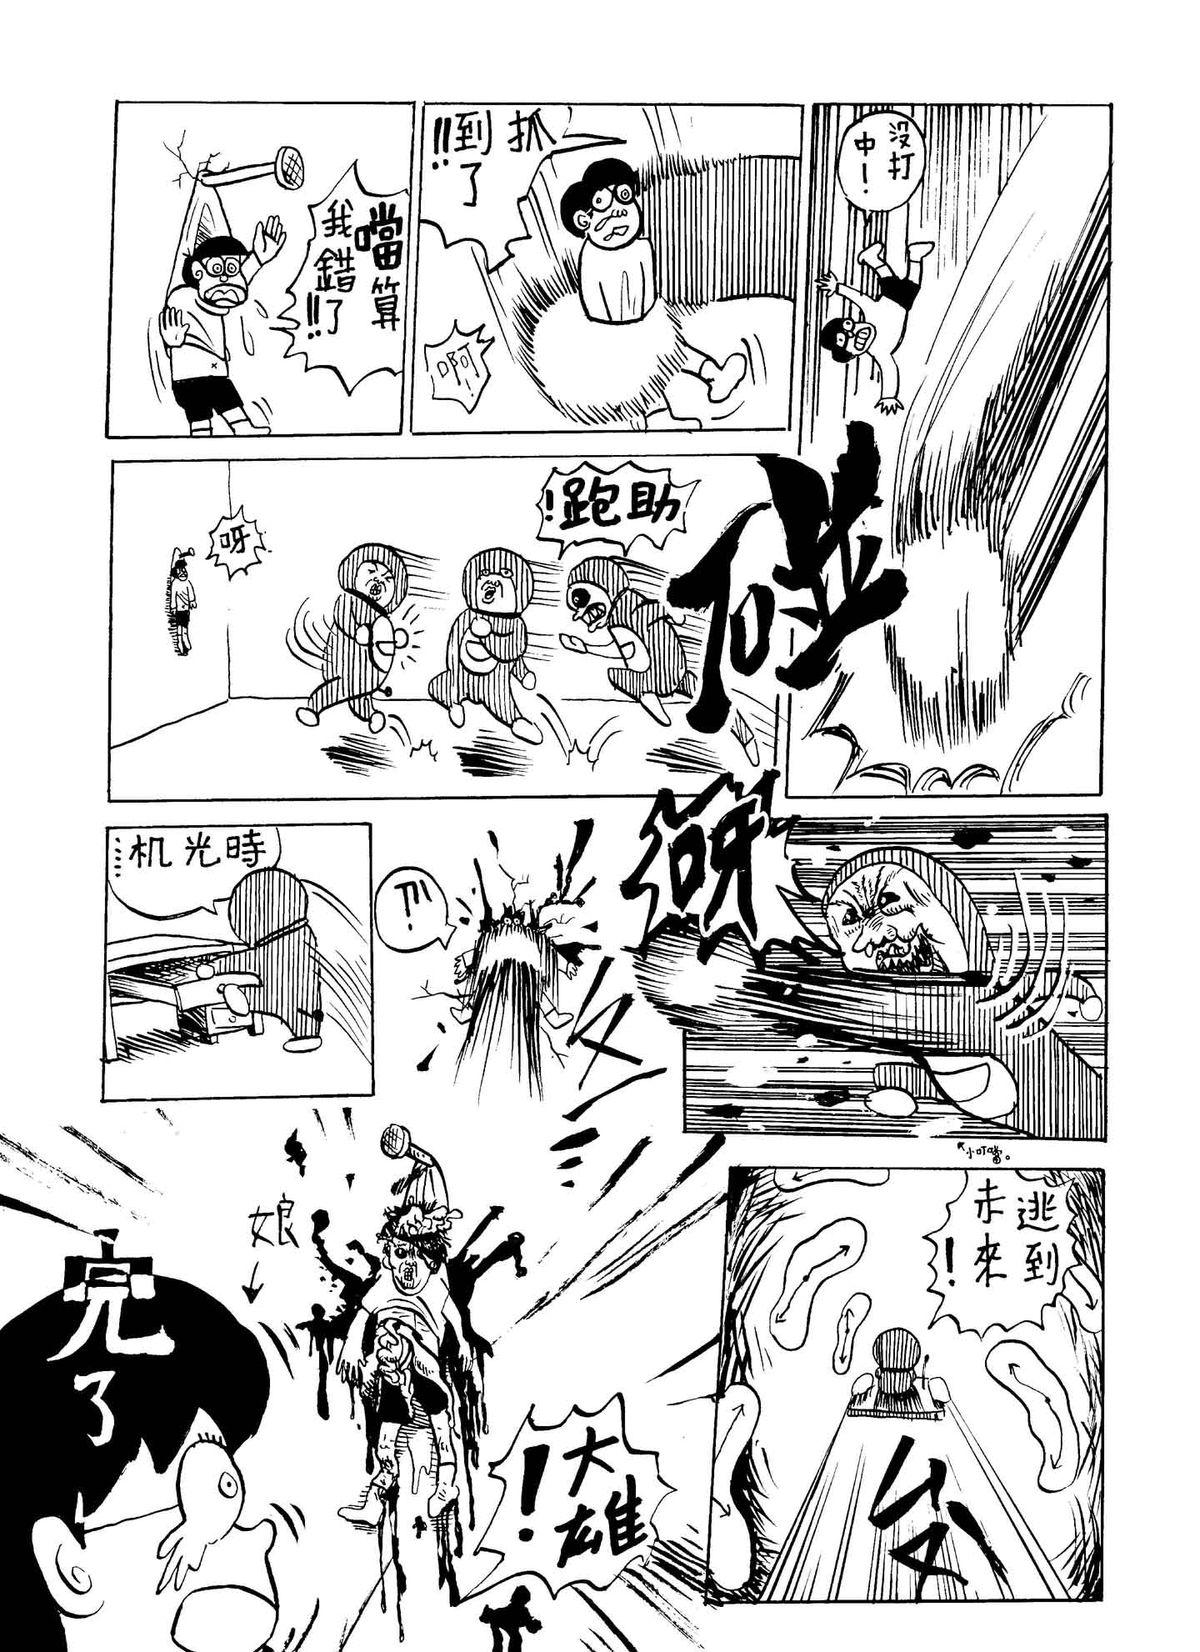 Petite Porn Xiao Ding Dang! - Doraemon Punishment - Page 3